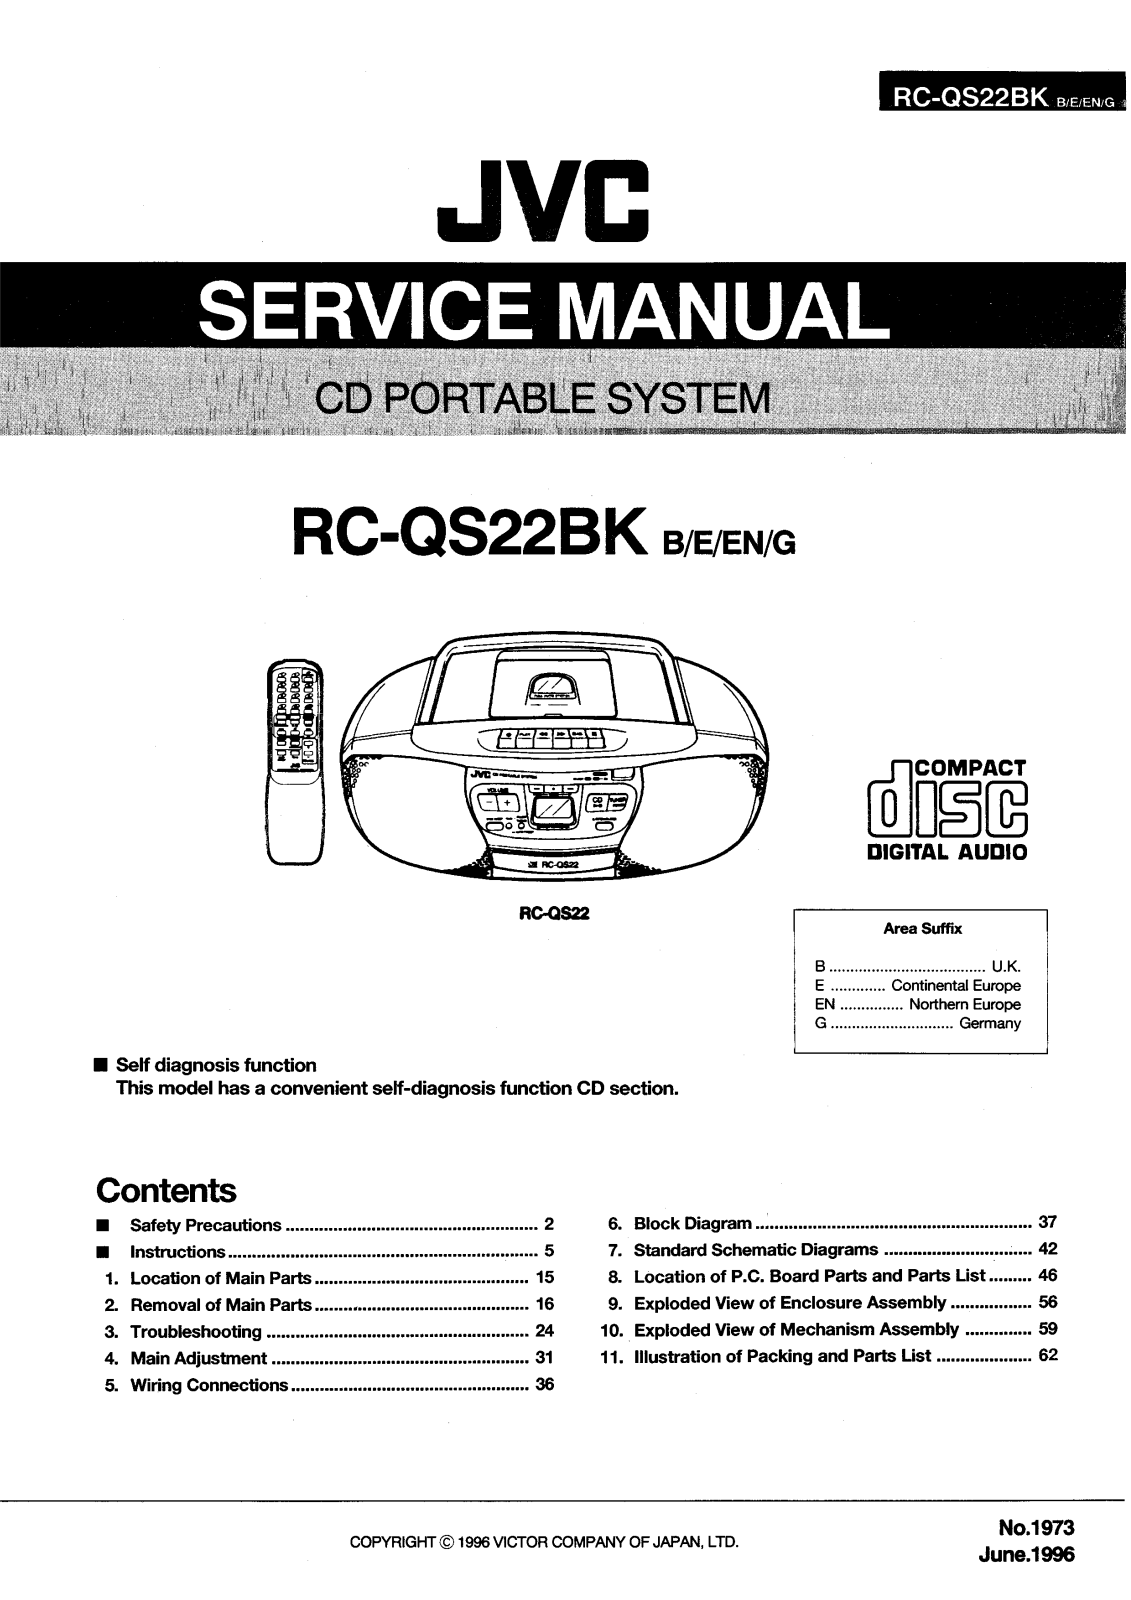 JVC RC-QS22BKB, RC-QS22BKEN, RC-QS22BKG Service Manual